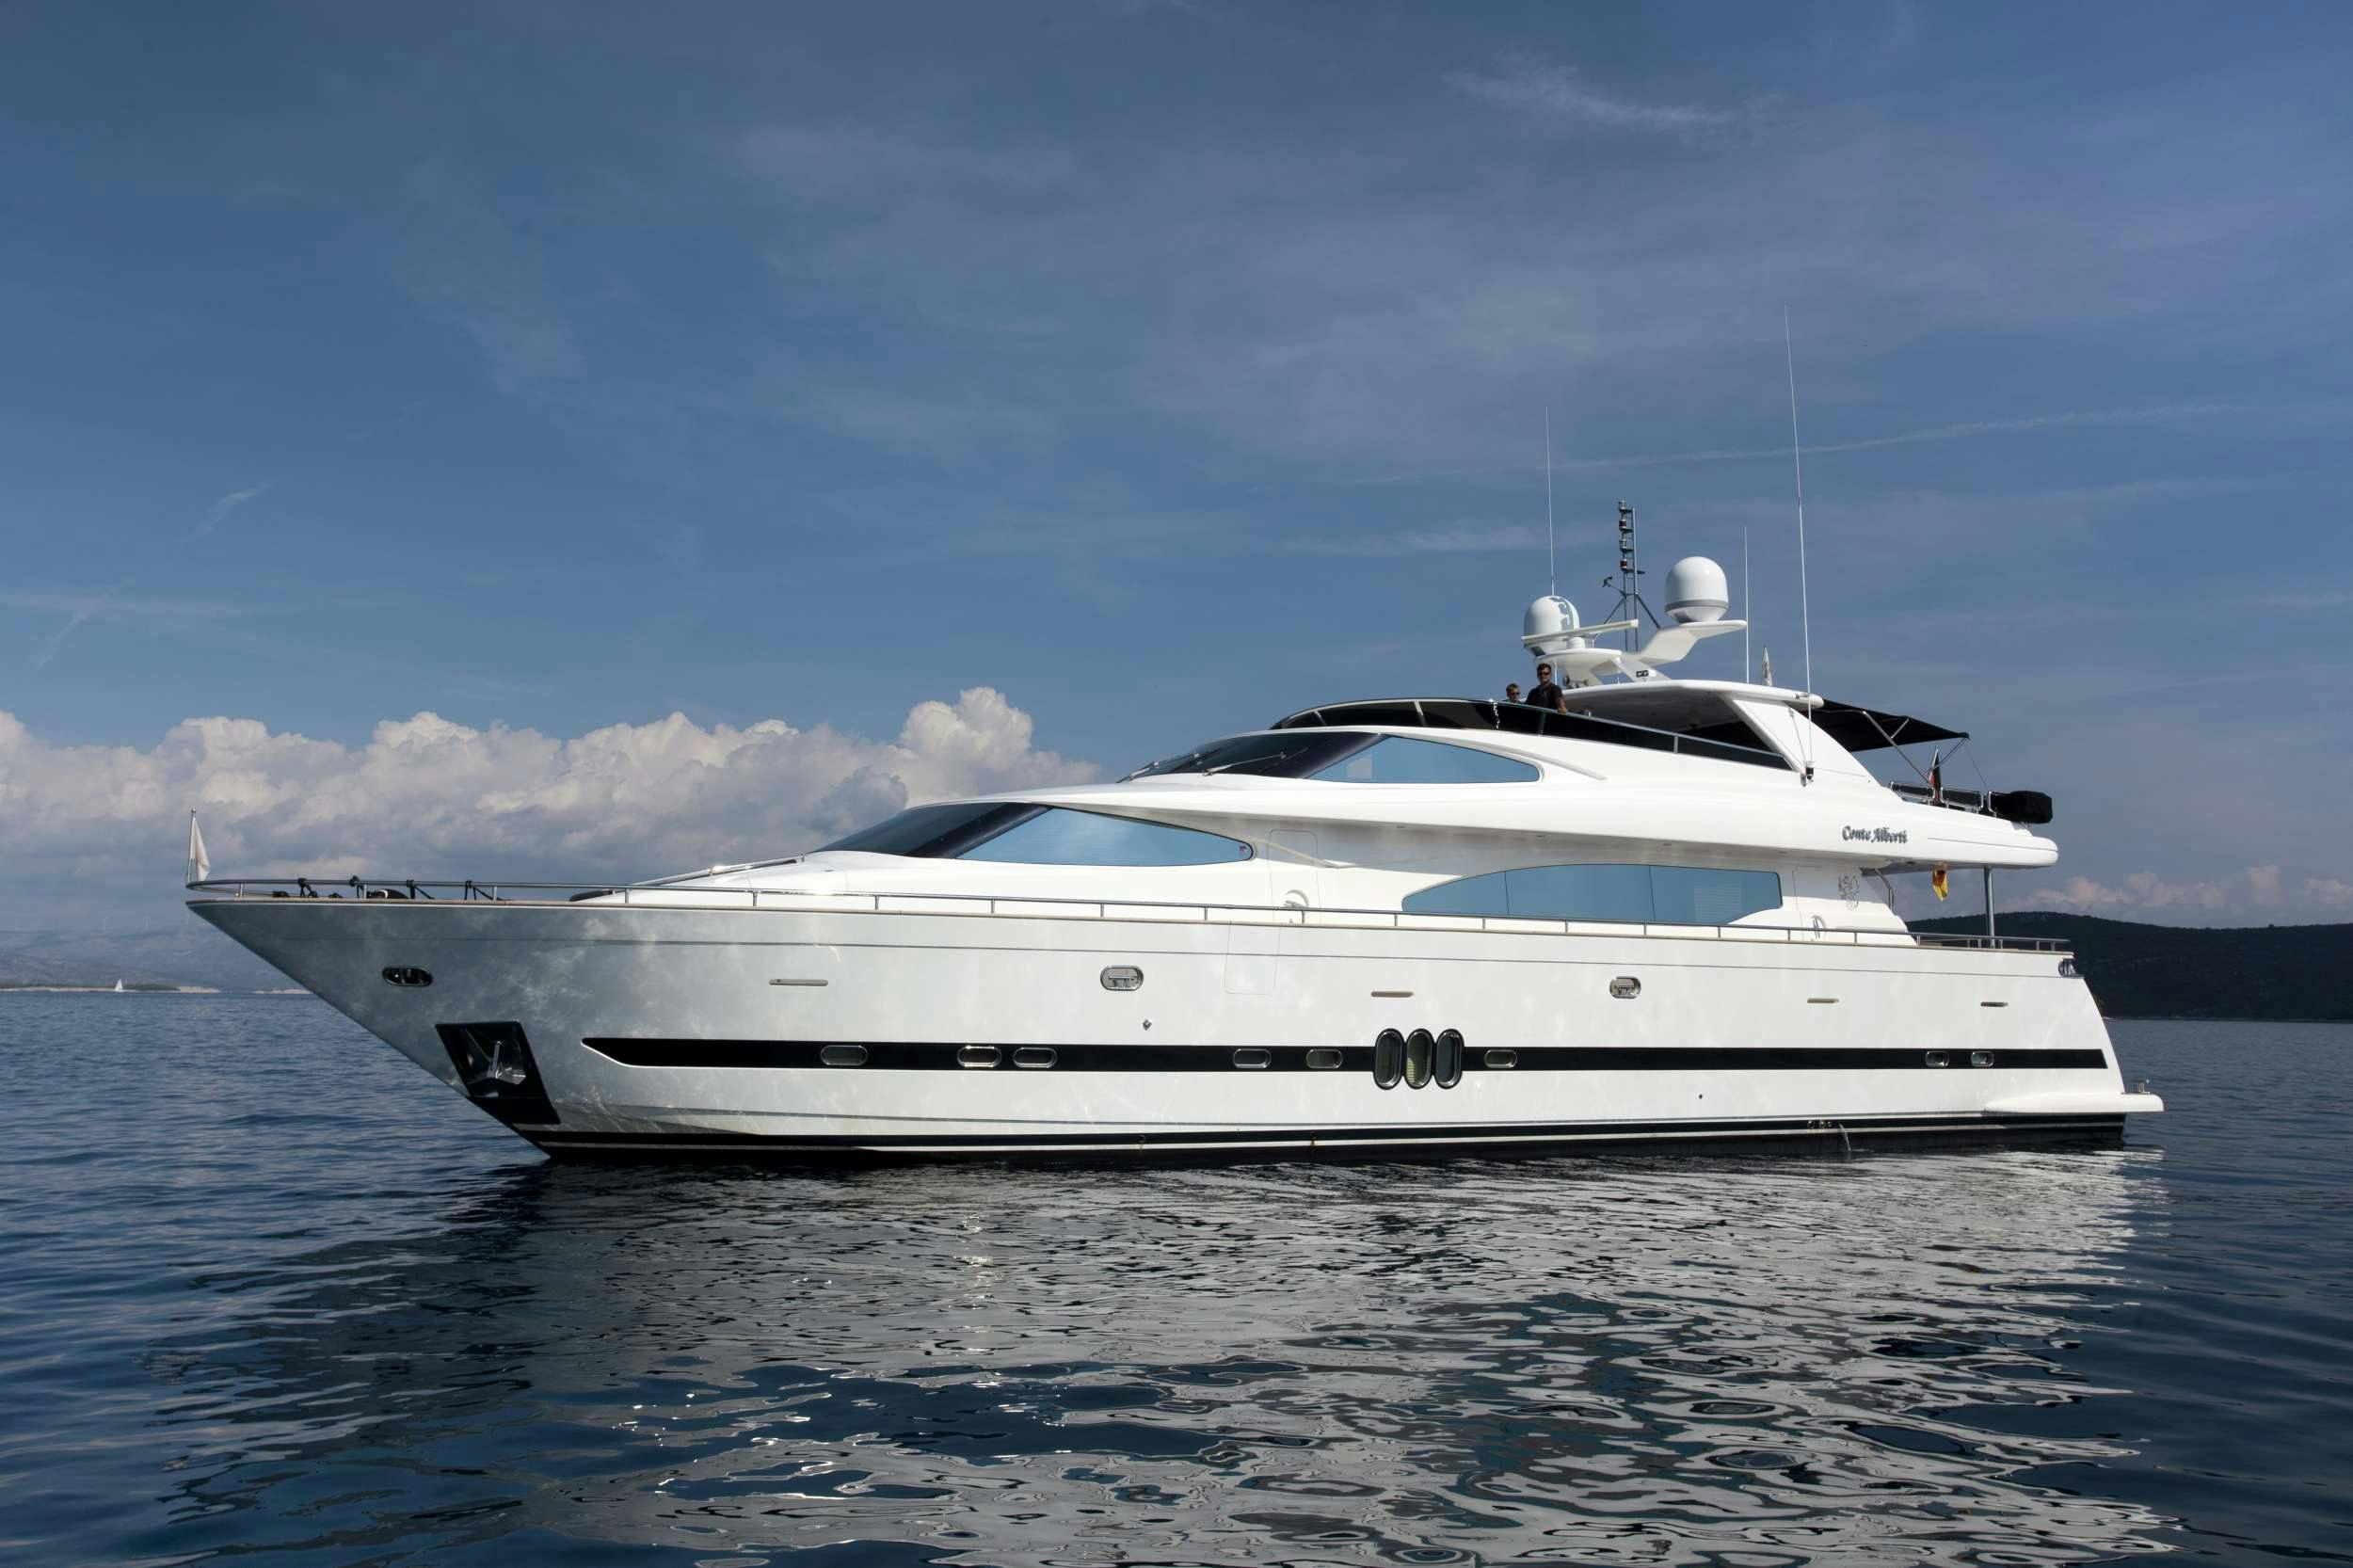 CONTE ALBERTI - Yacht Charter Agana & Boat hire in Croatia 1